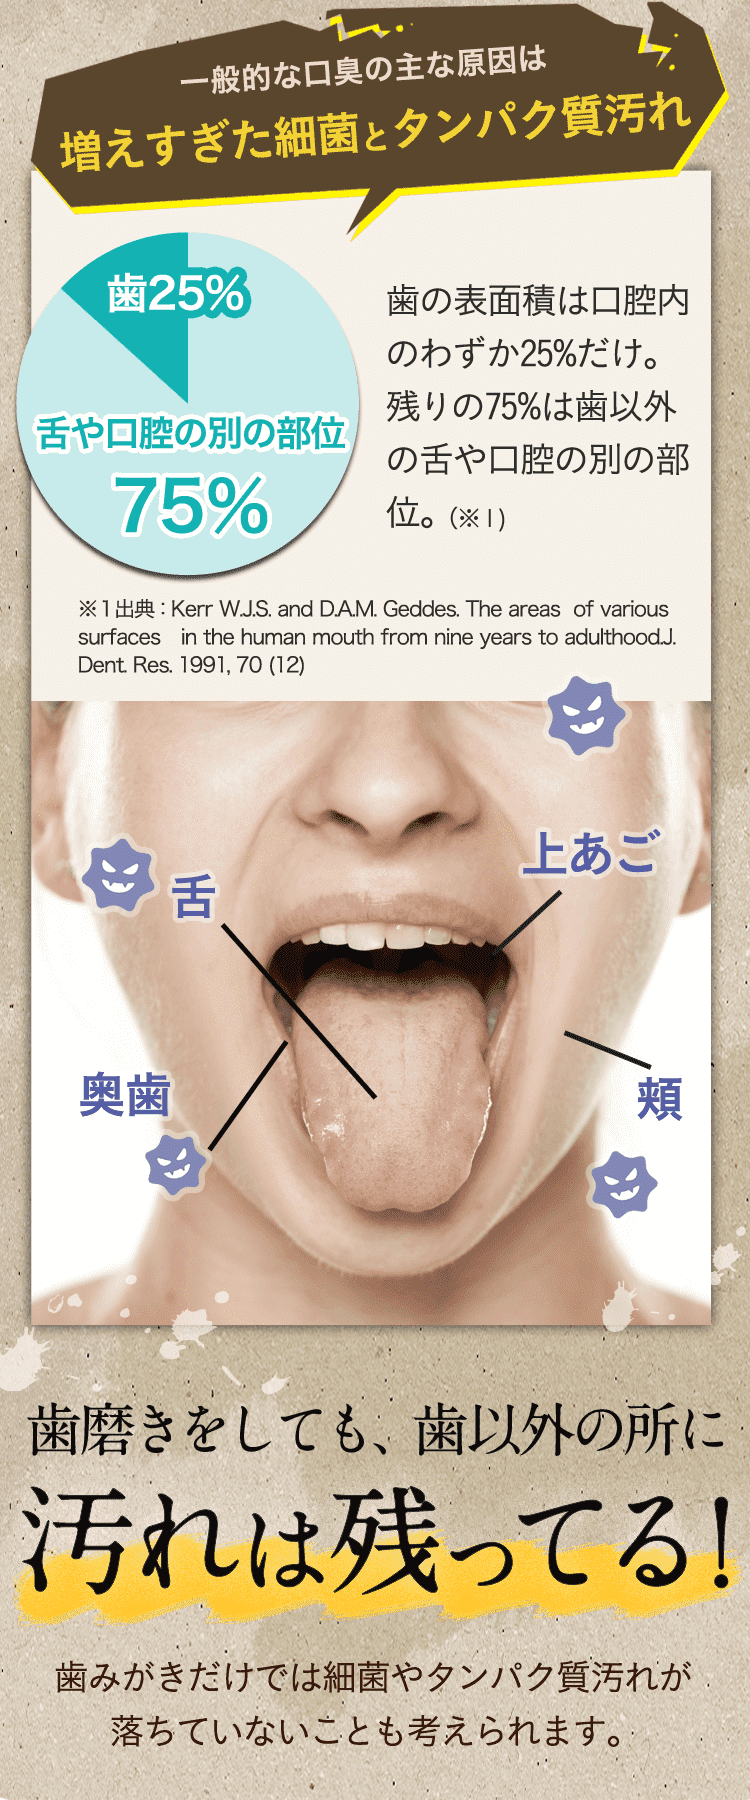 一般的な口臭の主な原因は増えすぎた細菌とタンパク質汚れ